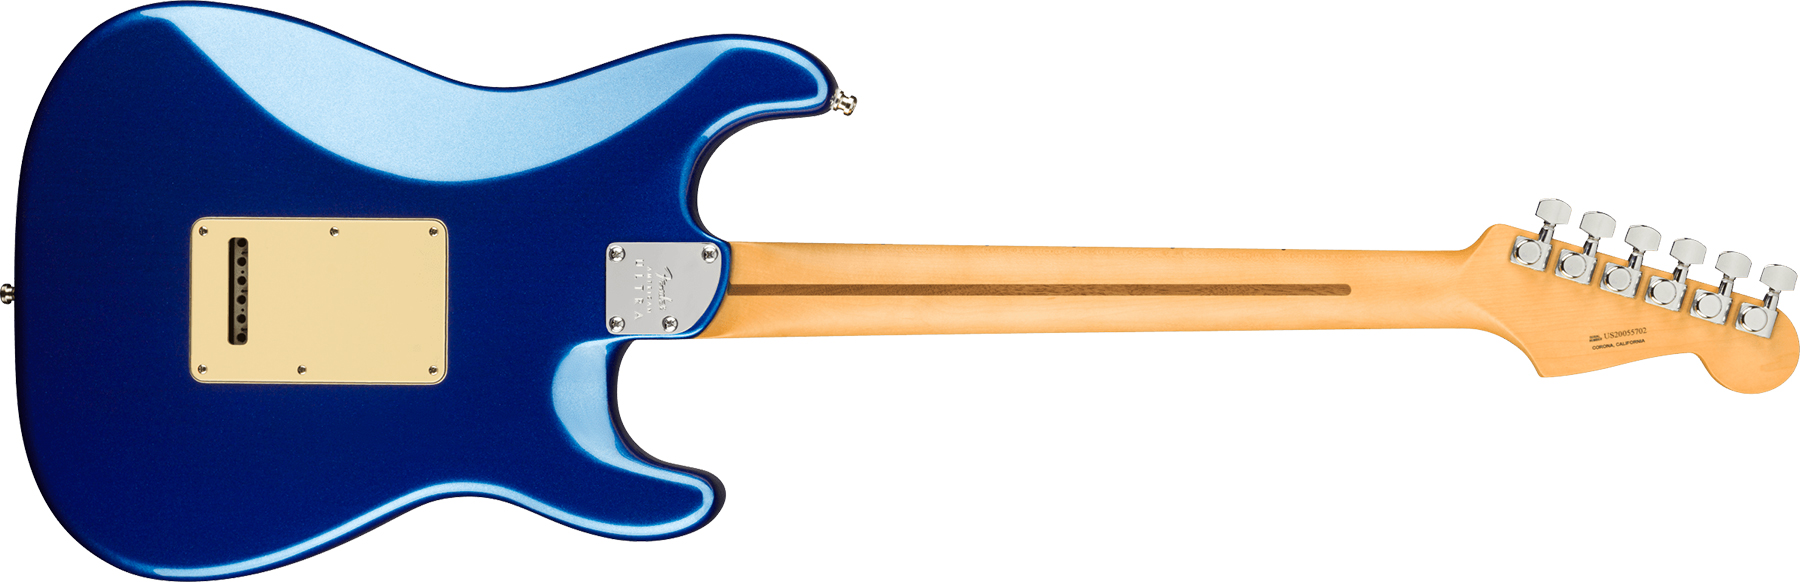 Fender Strat American Ultra Lh Gaucher Usa Mn +etui - Cobra Blue - Elektrische gitaar in Str-vorm - Variation 1